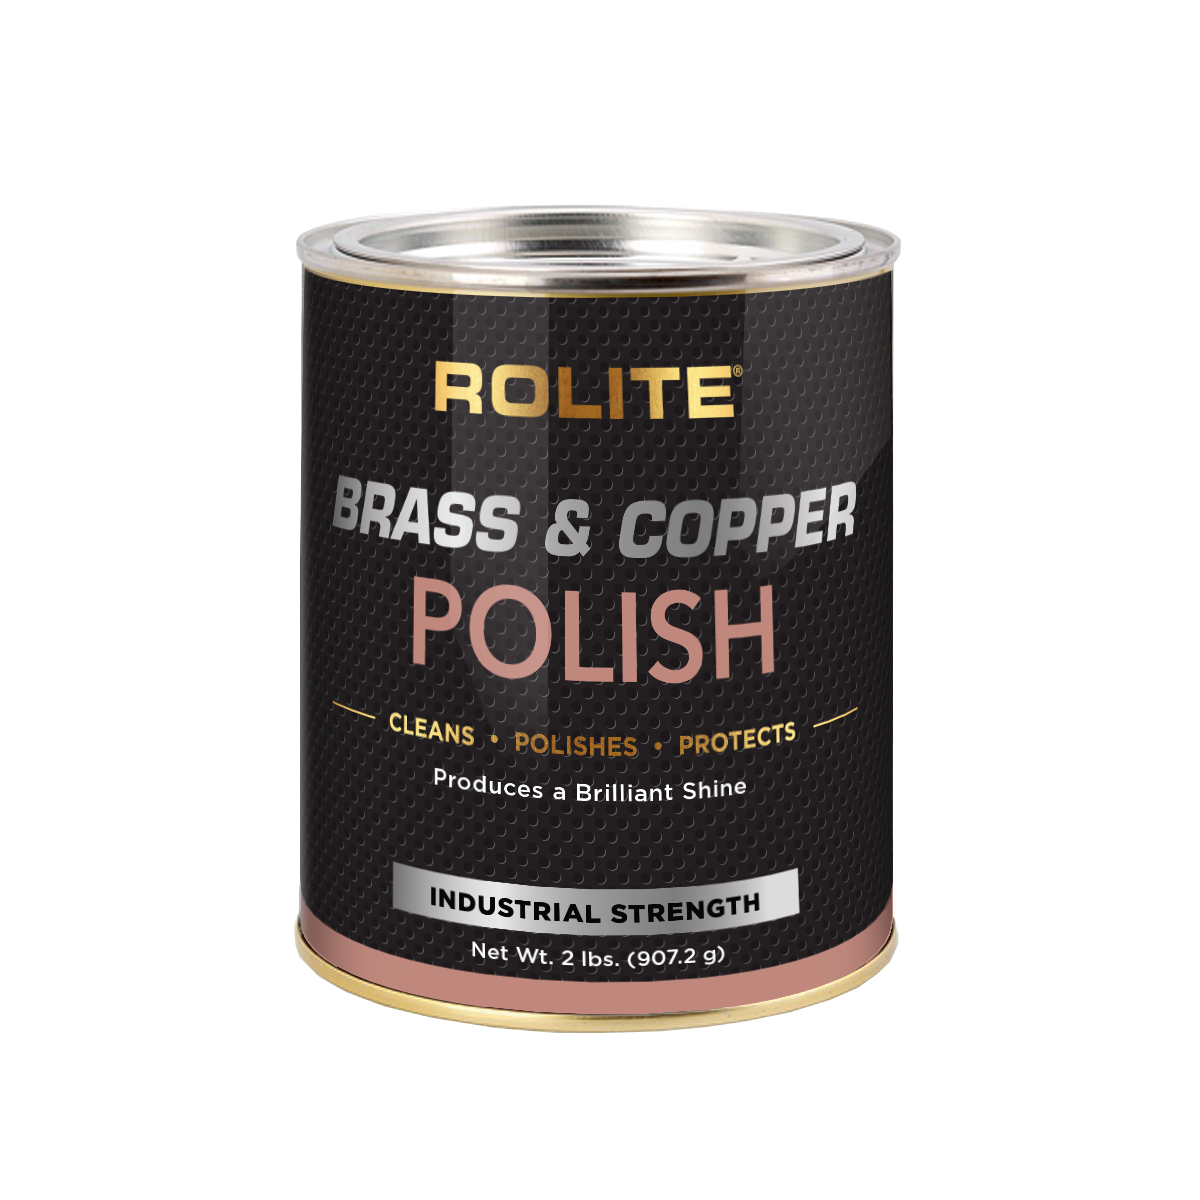 Rolite Brass & Copper Polish 2lb Can